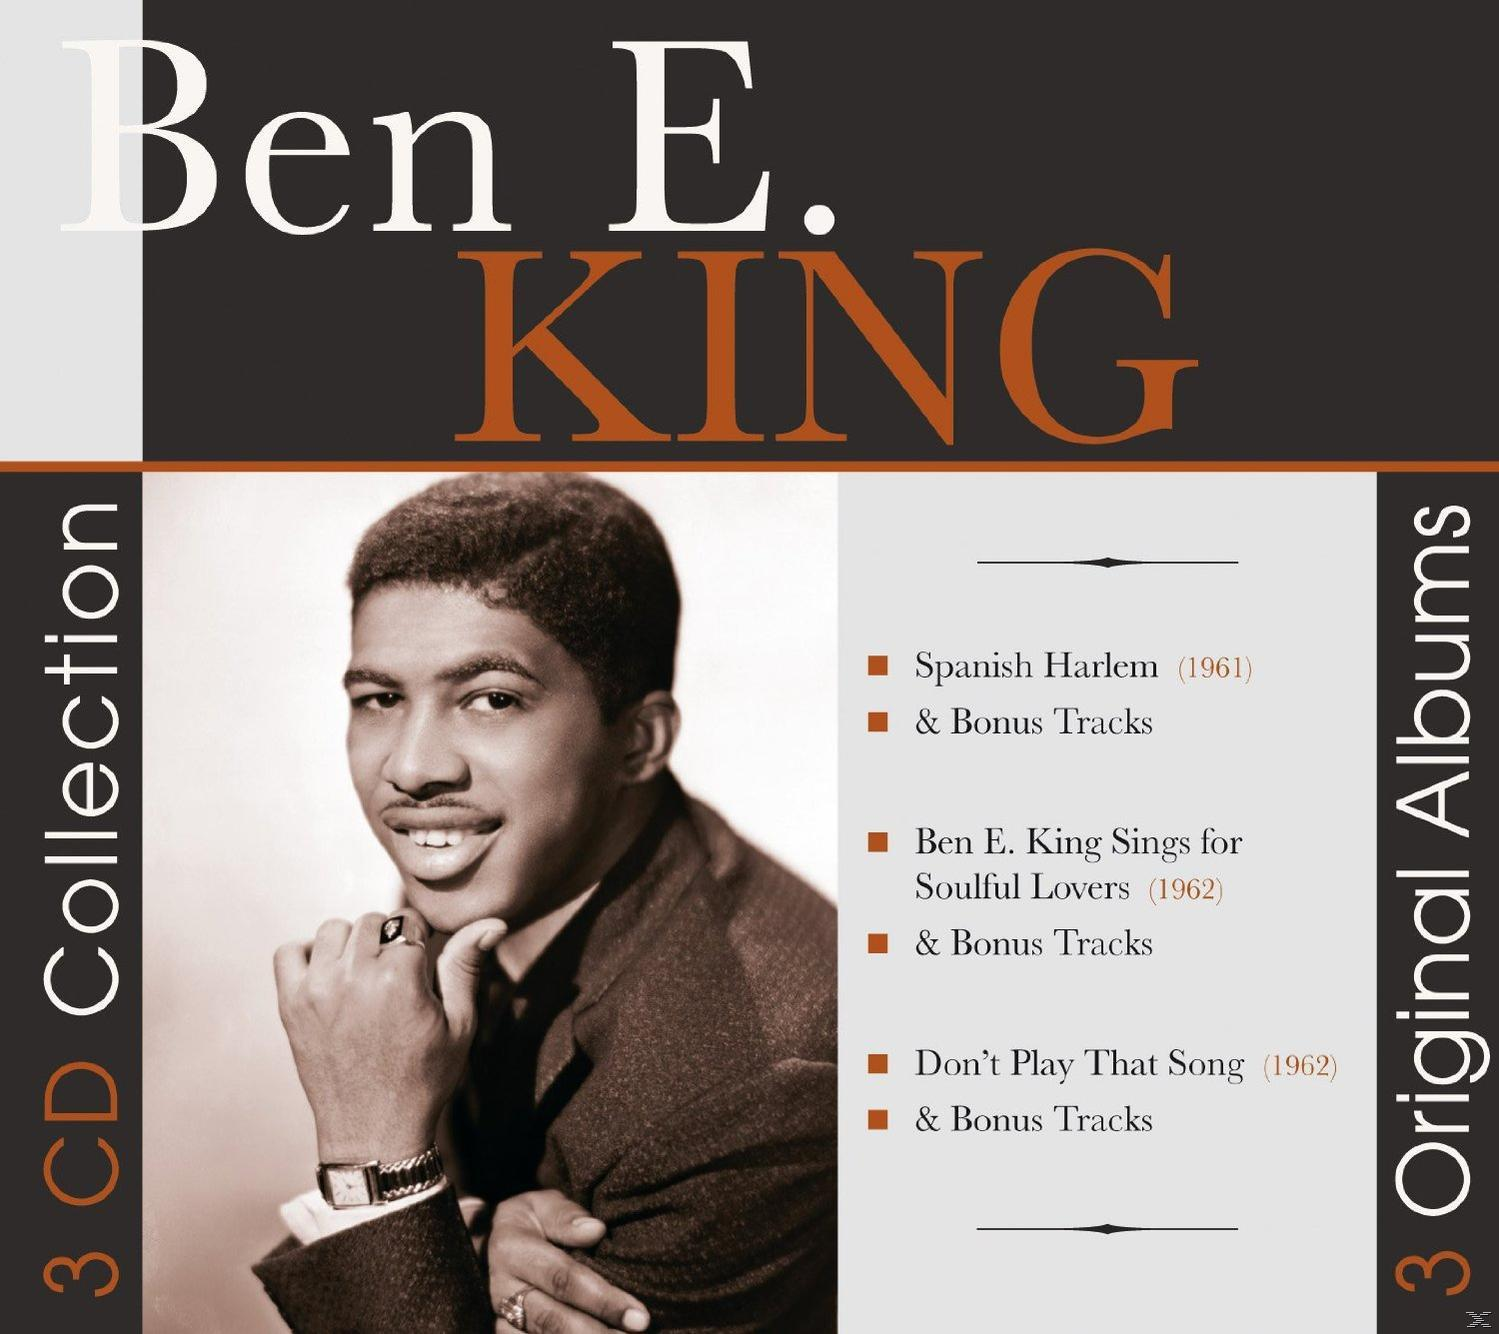 E. - Albums King Ben (CD) 3 - Original